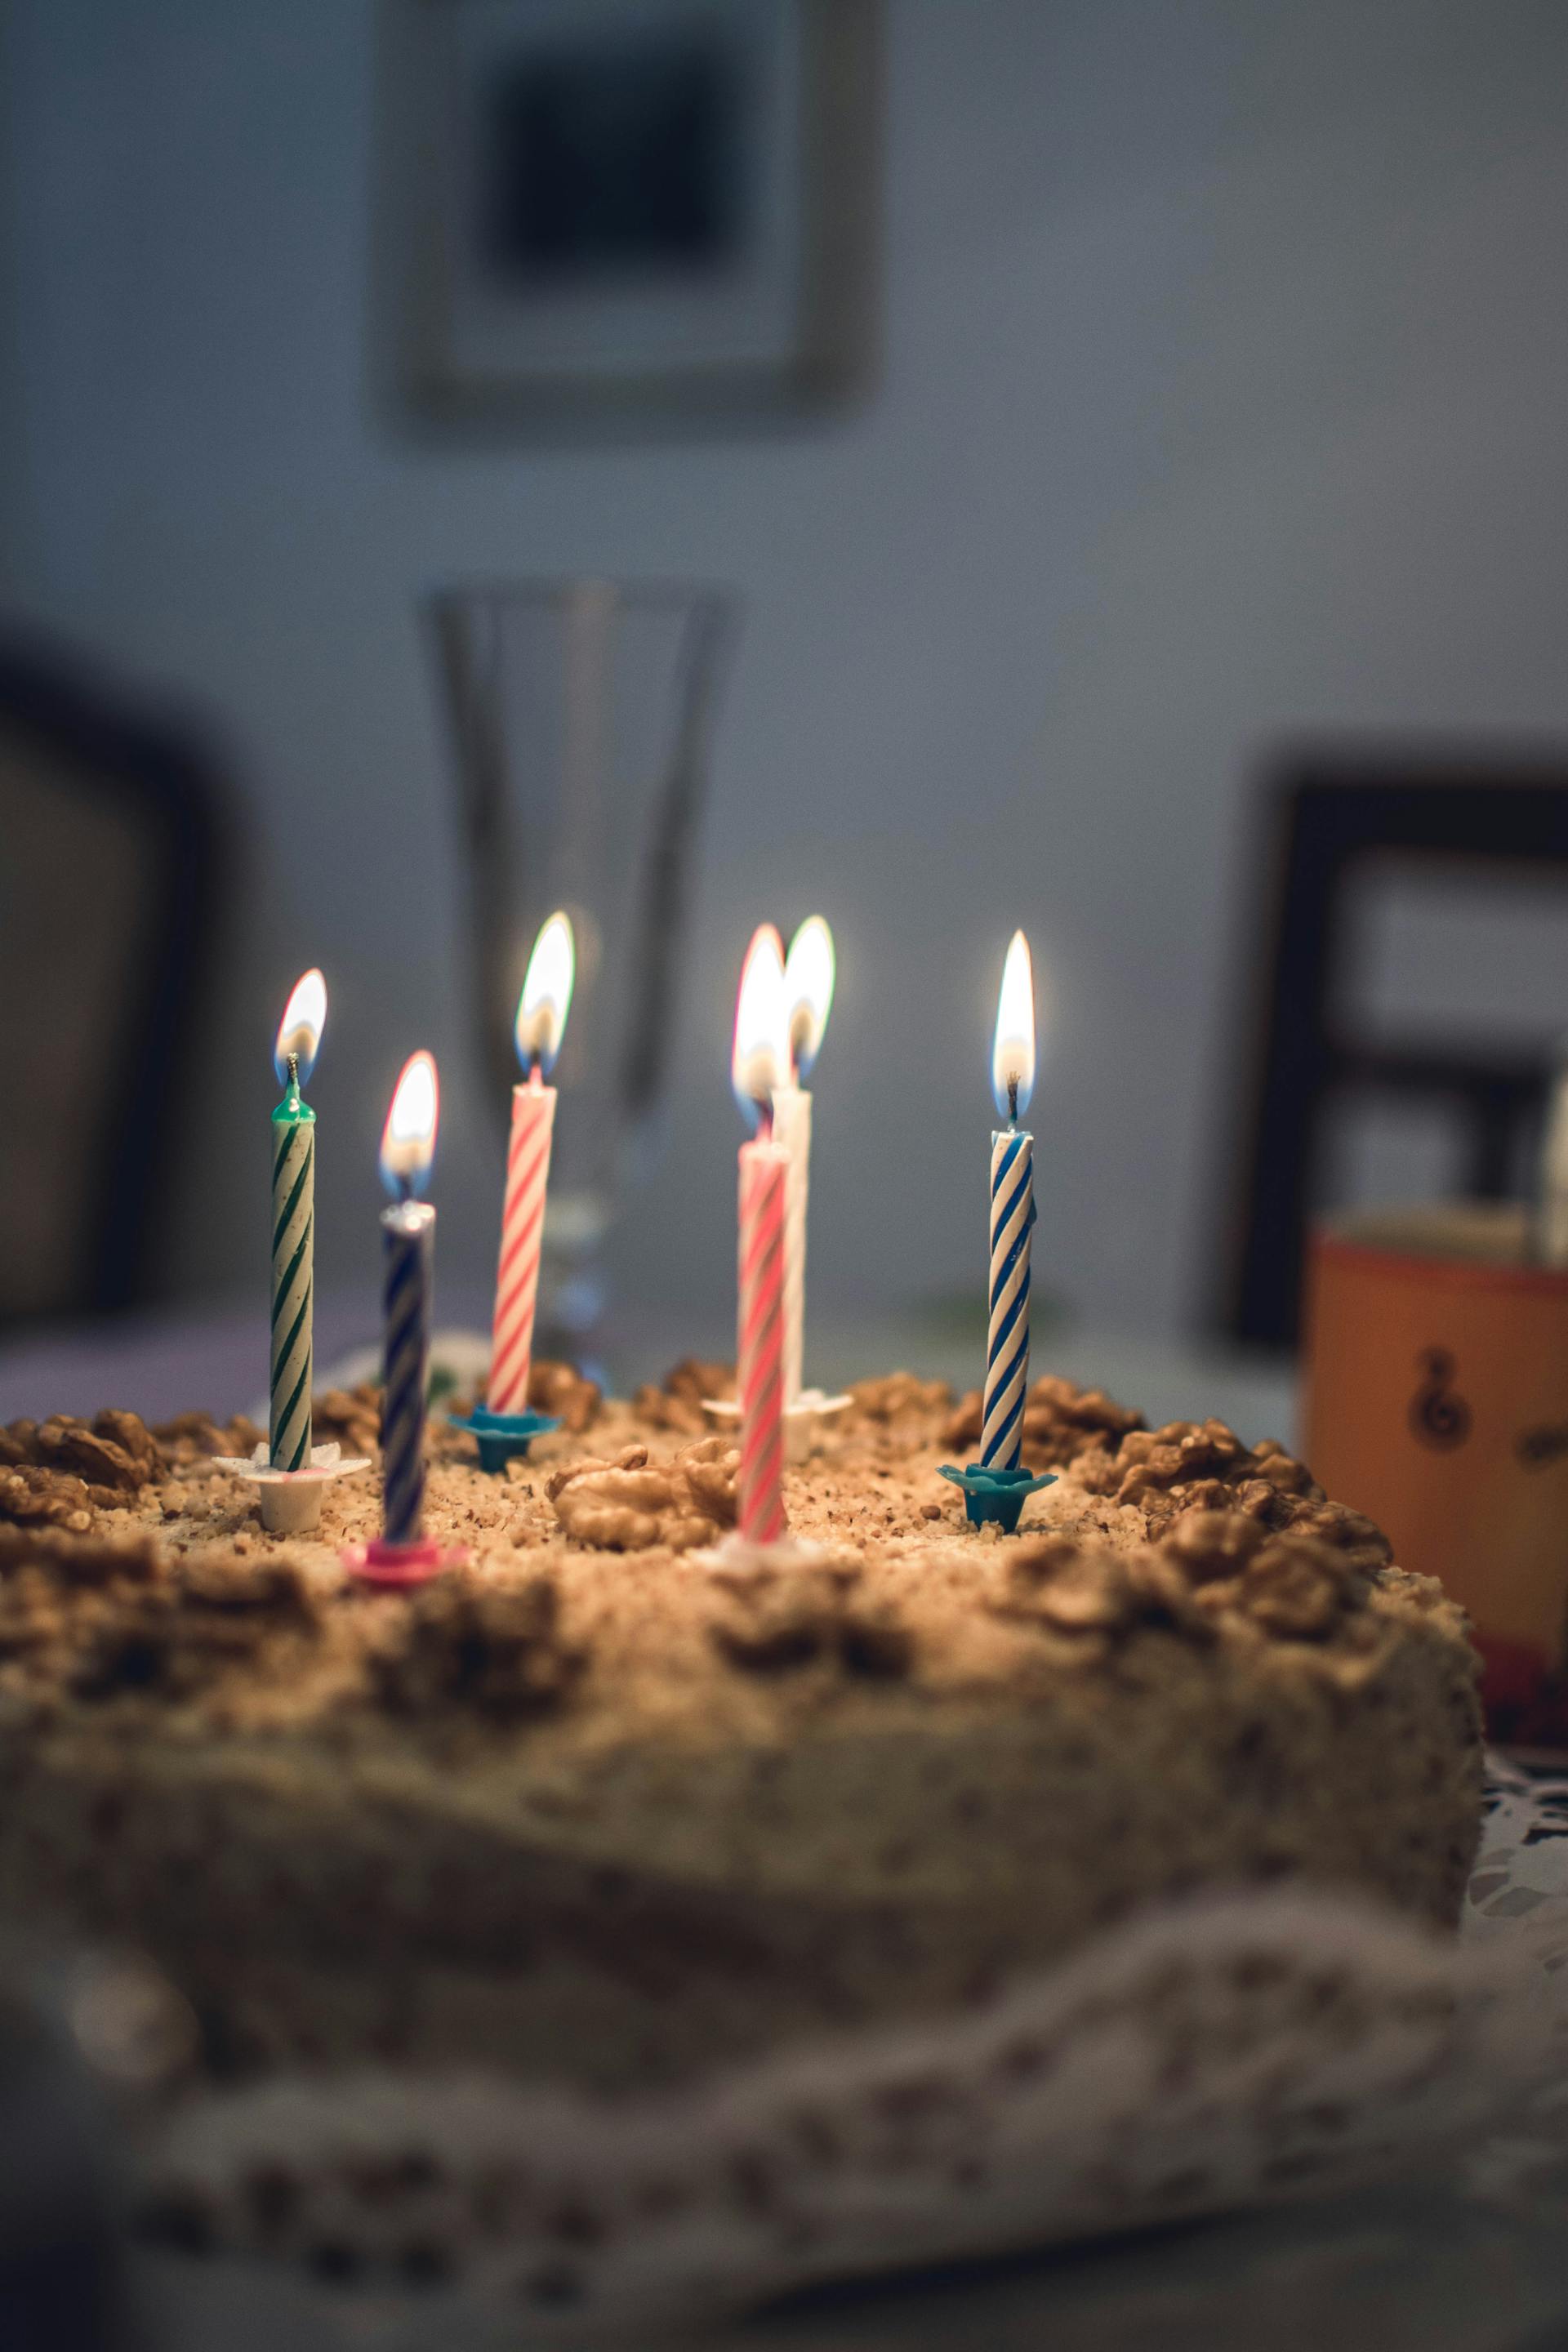 Ein Geburtstagskuchen mit brennenden Kerzen | Quelle: Pexels